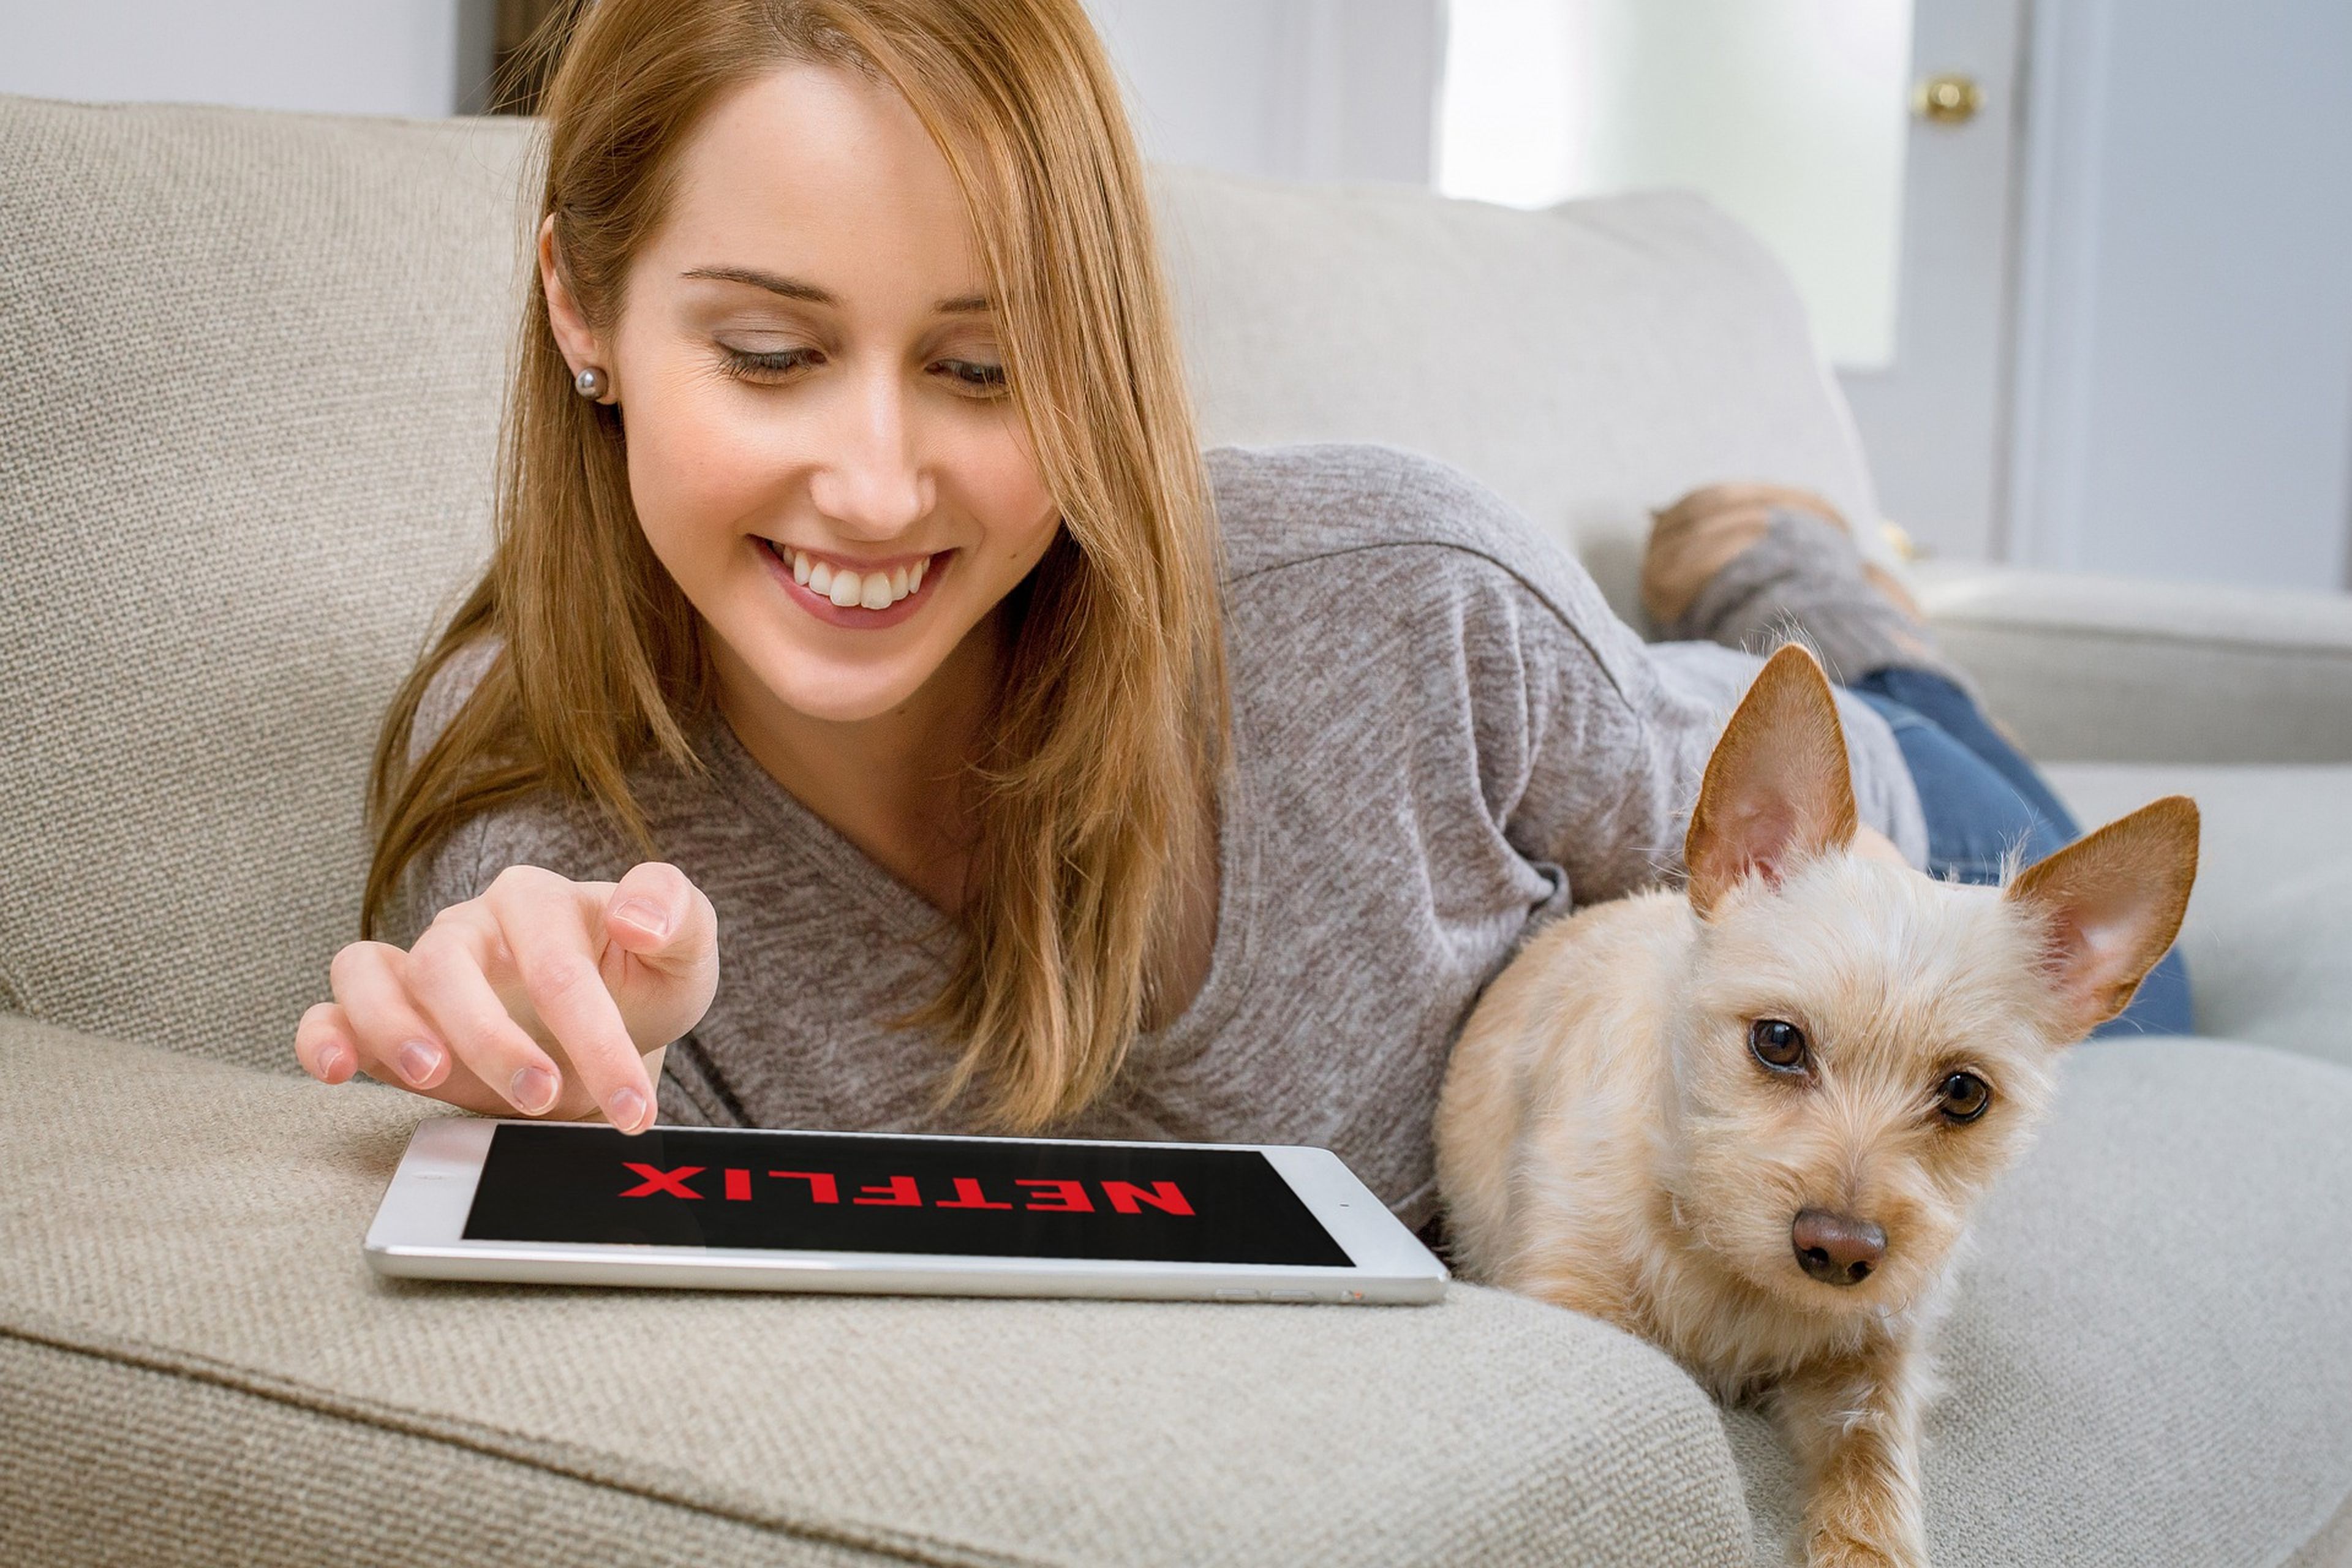 Una mujer con su perro abre Netflix en una tablet.